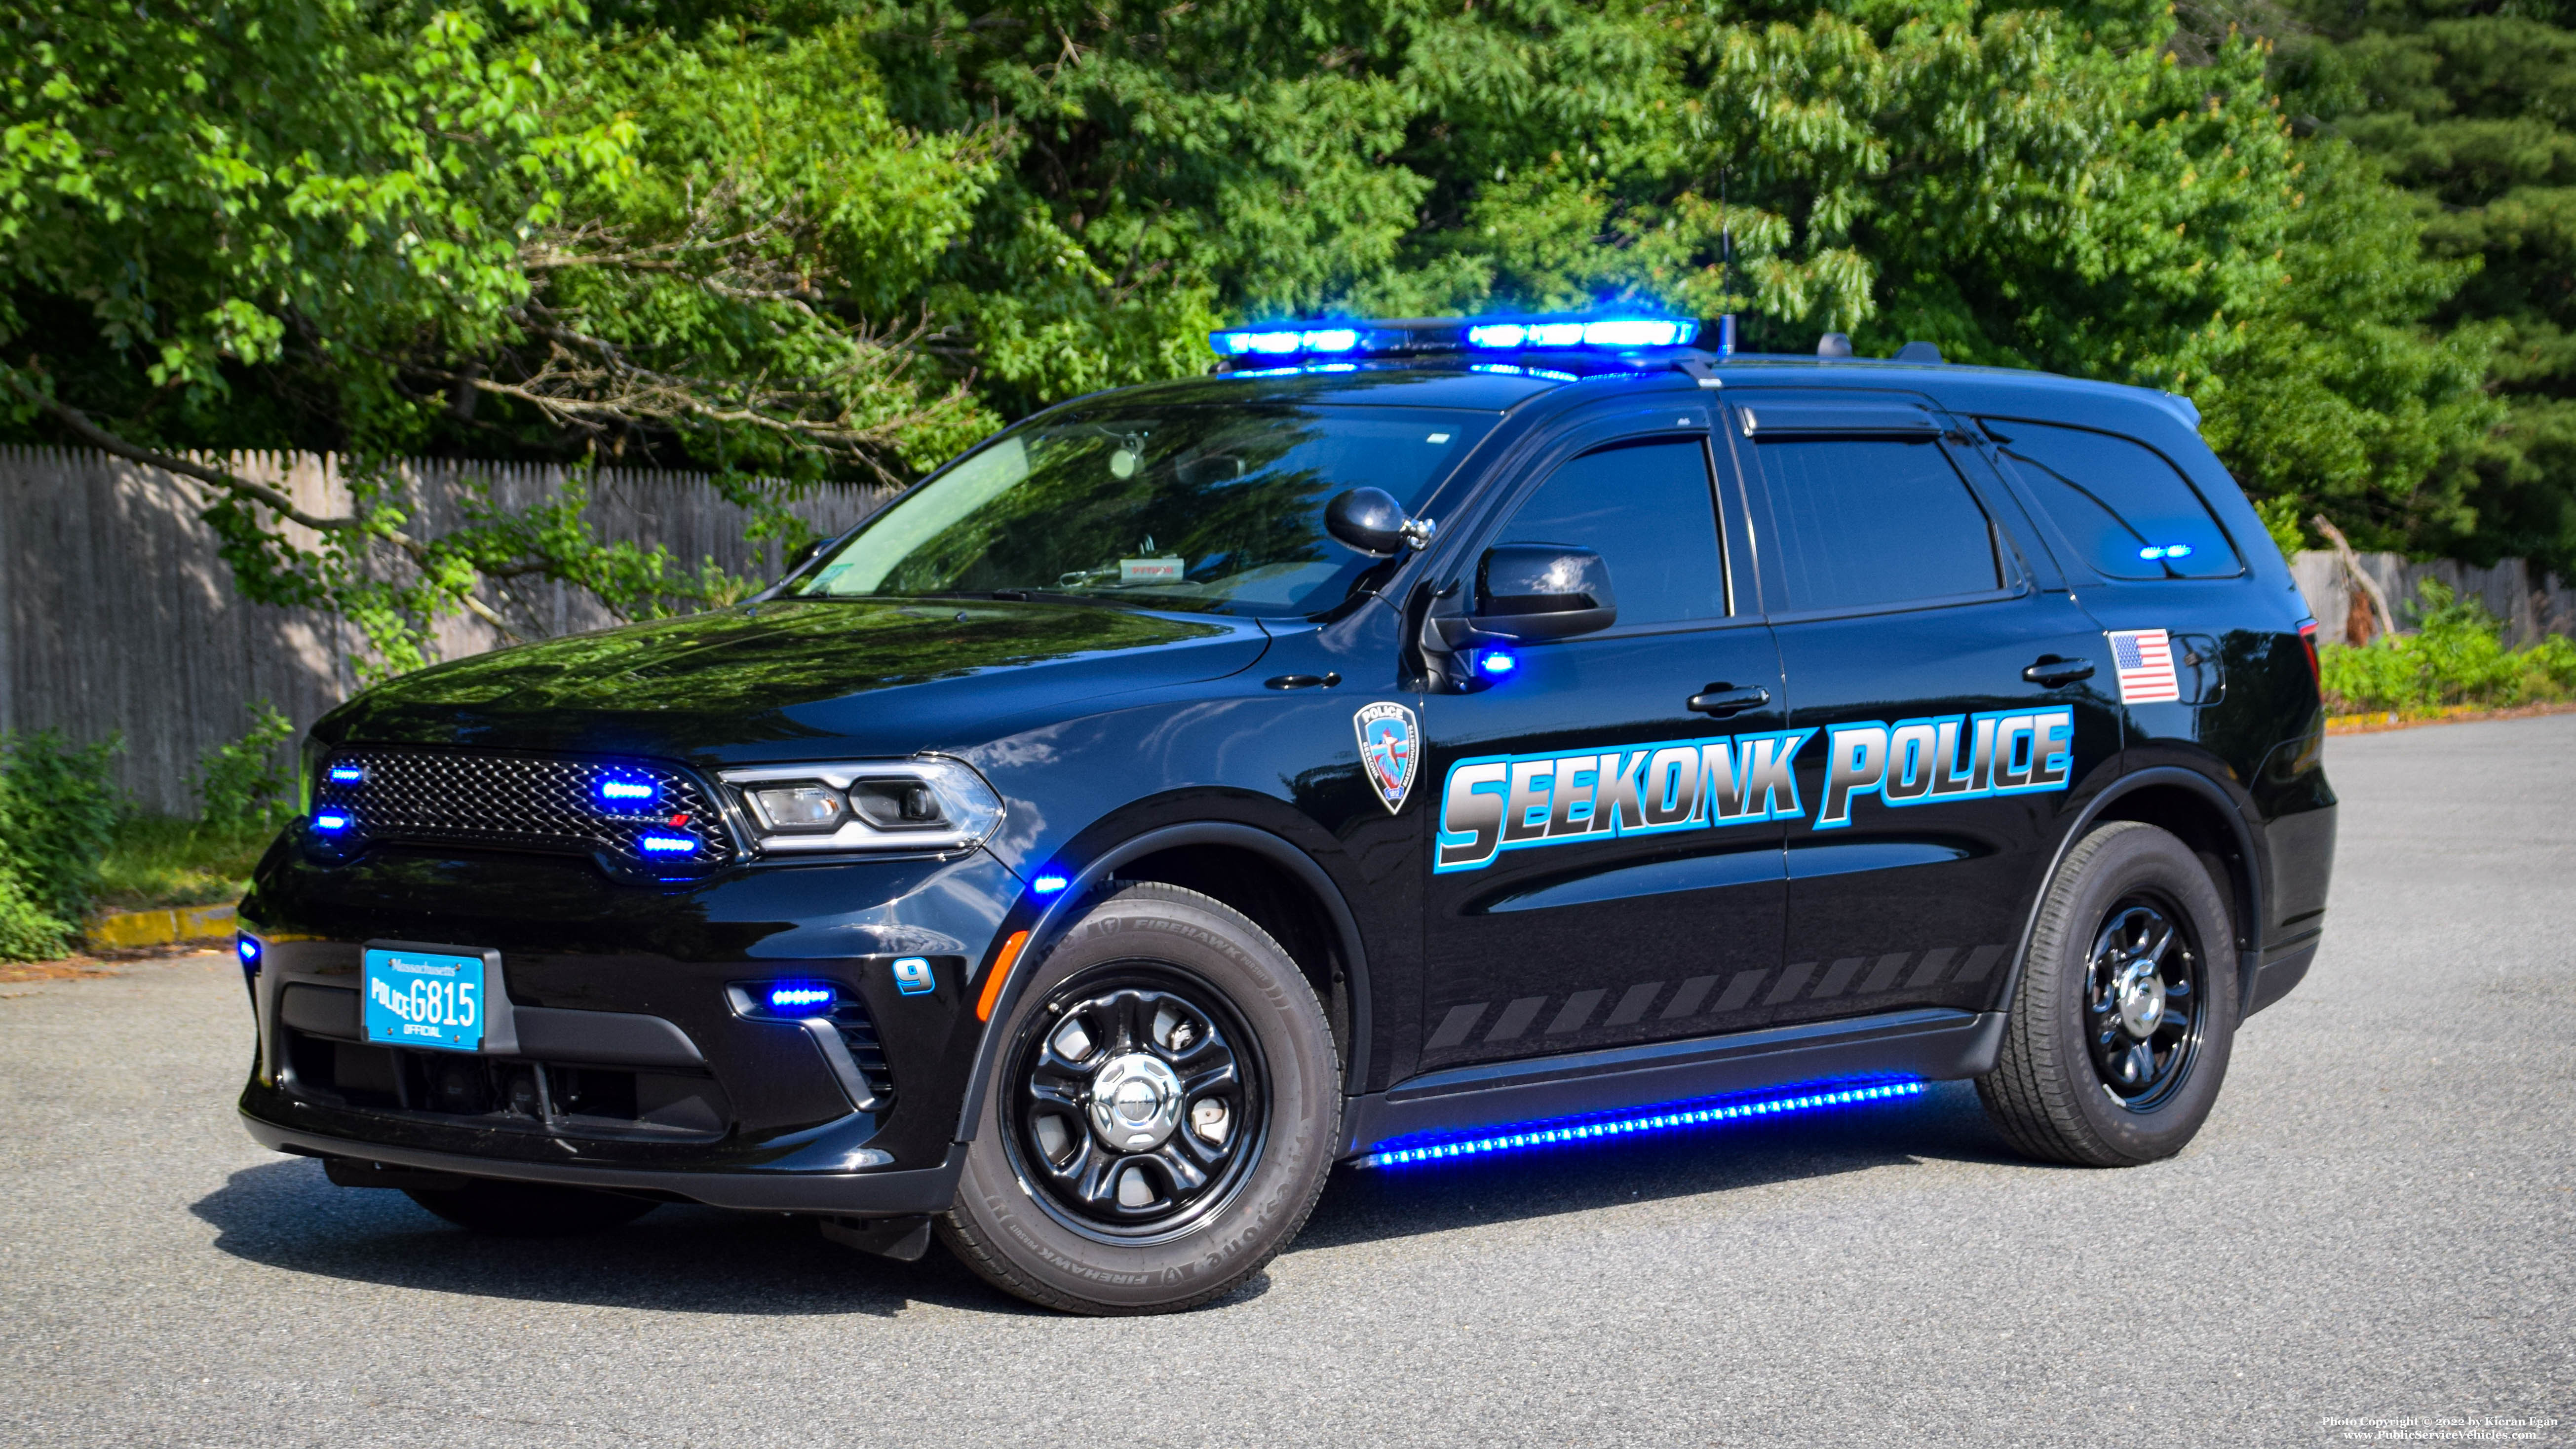 A photo  of Seekonk Police
            Car 9, a 2021 Dodge Durango             taken by Kieran Egan